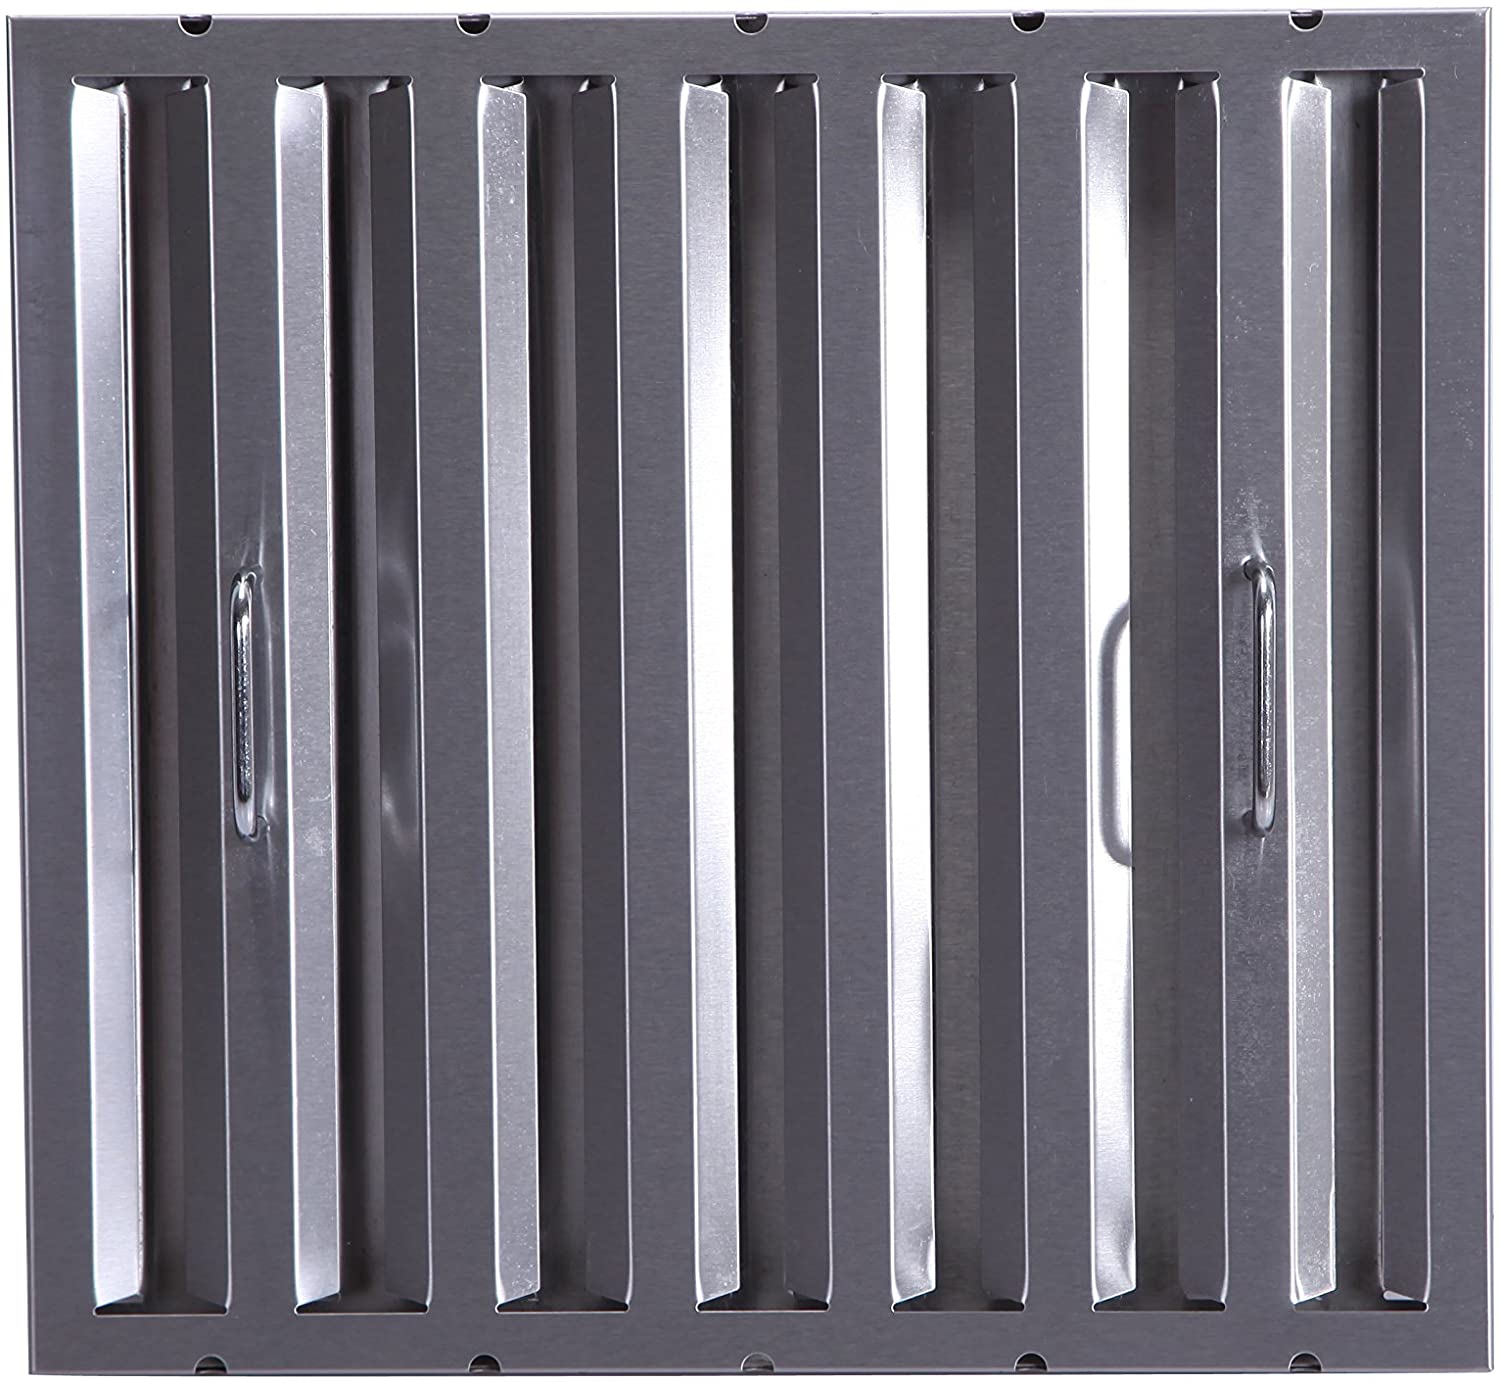 NXR 30 in. Professional Under Cabinet Stainless Steel Range Hood, RH3001 - Smart Kitchen Lab